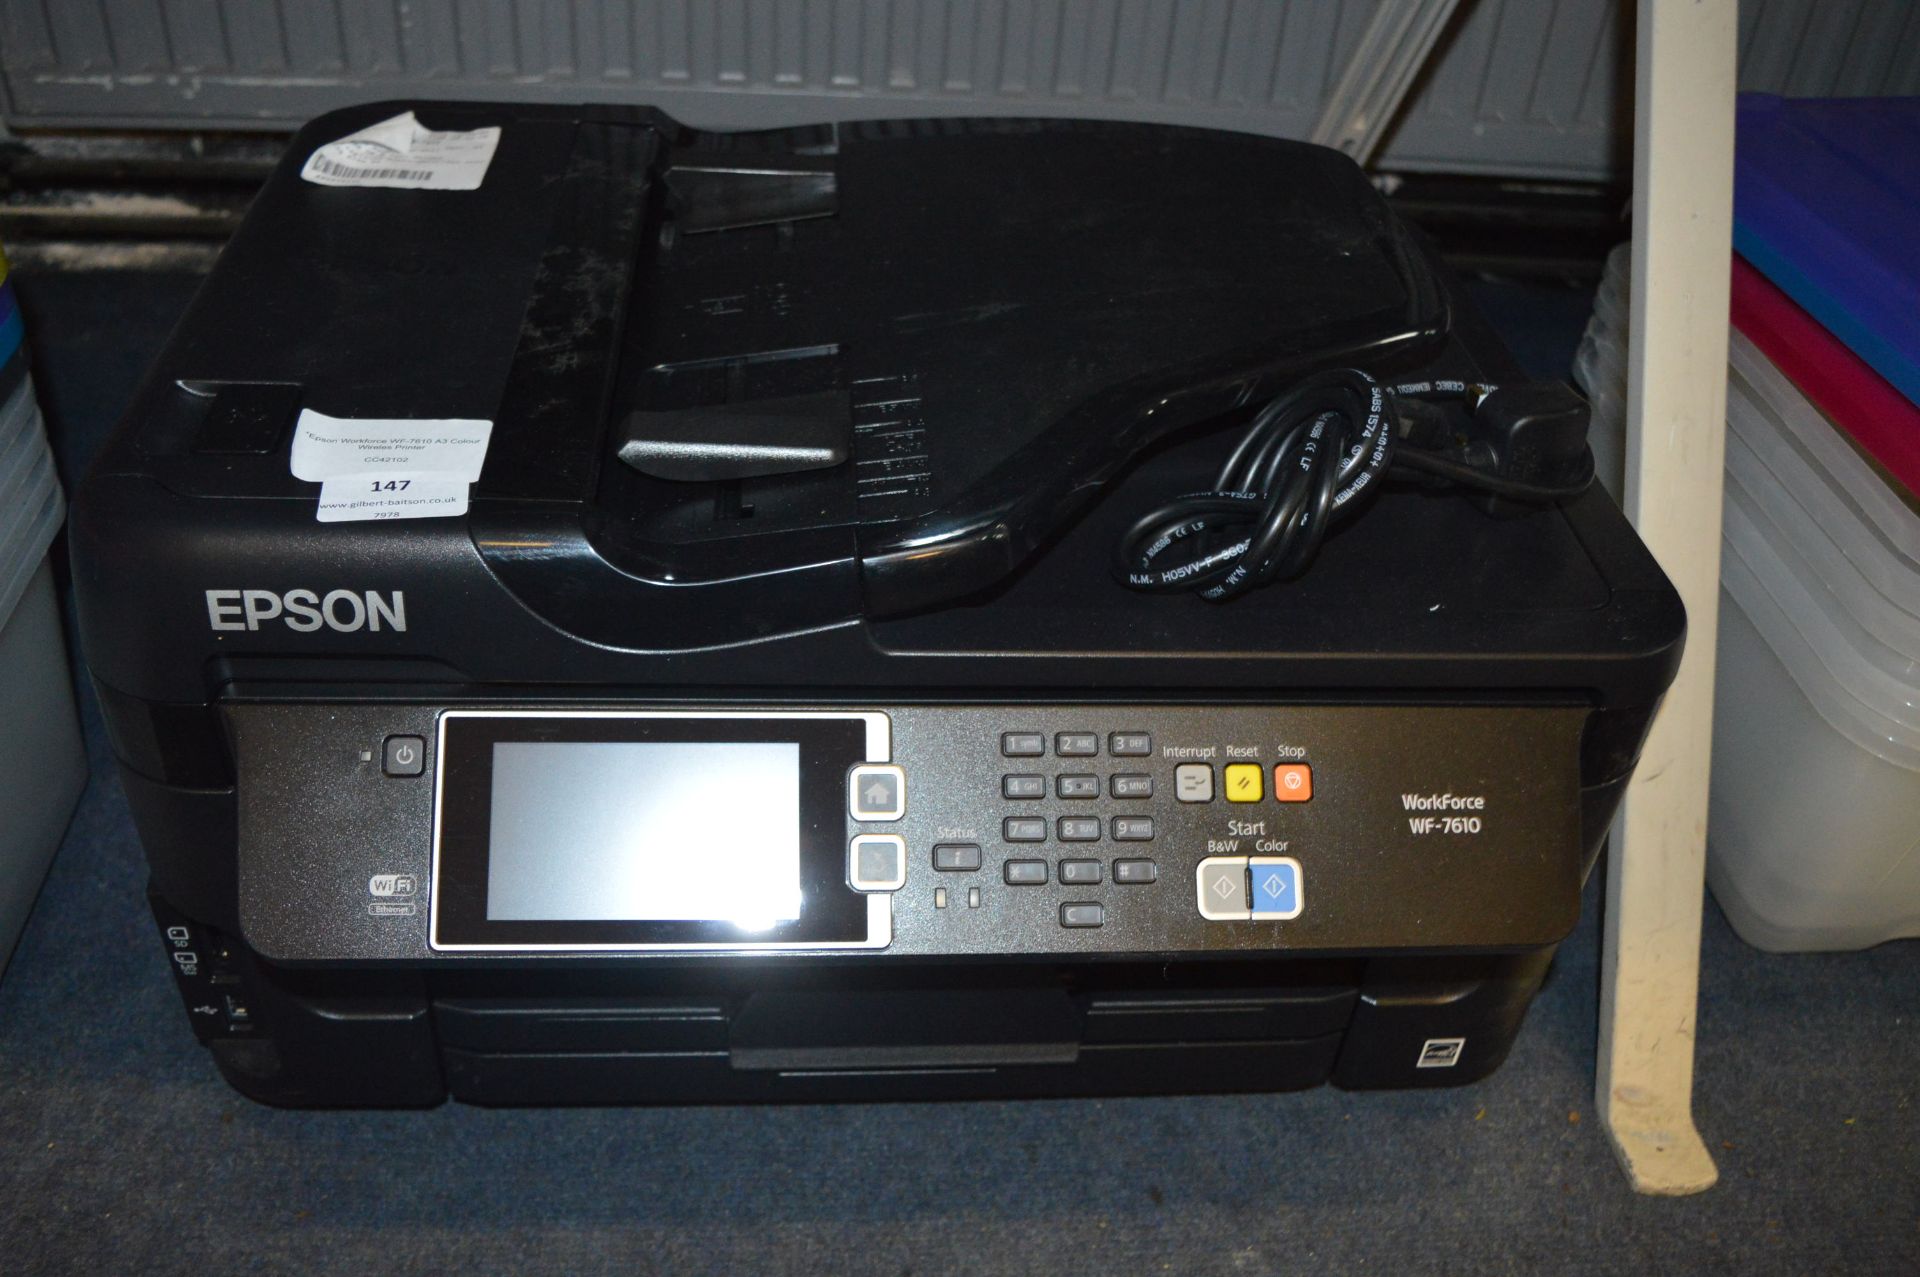 *Epson Workforce WF-7610 A3 Colour Wireless Printer